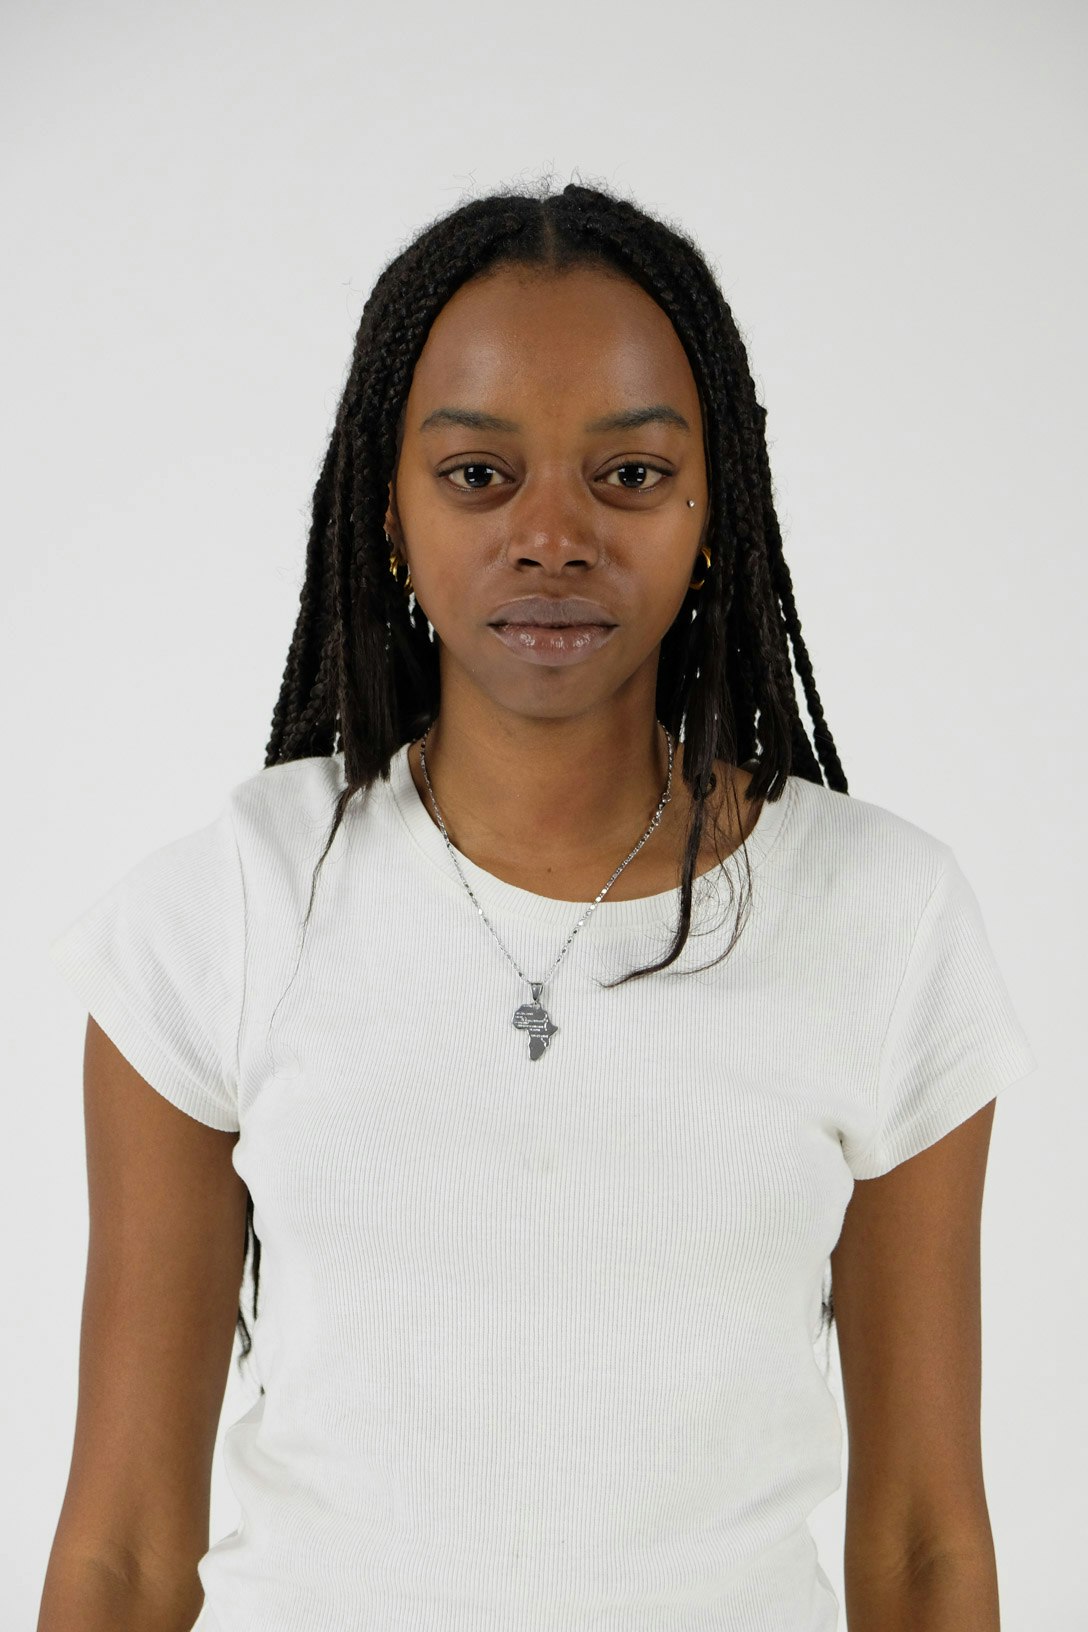 An image of Aisatou Diallo